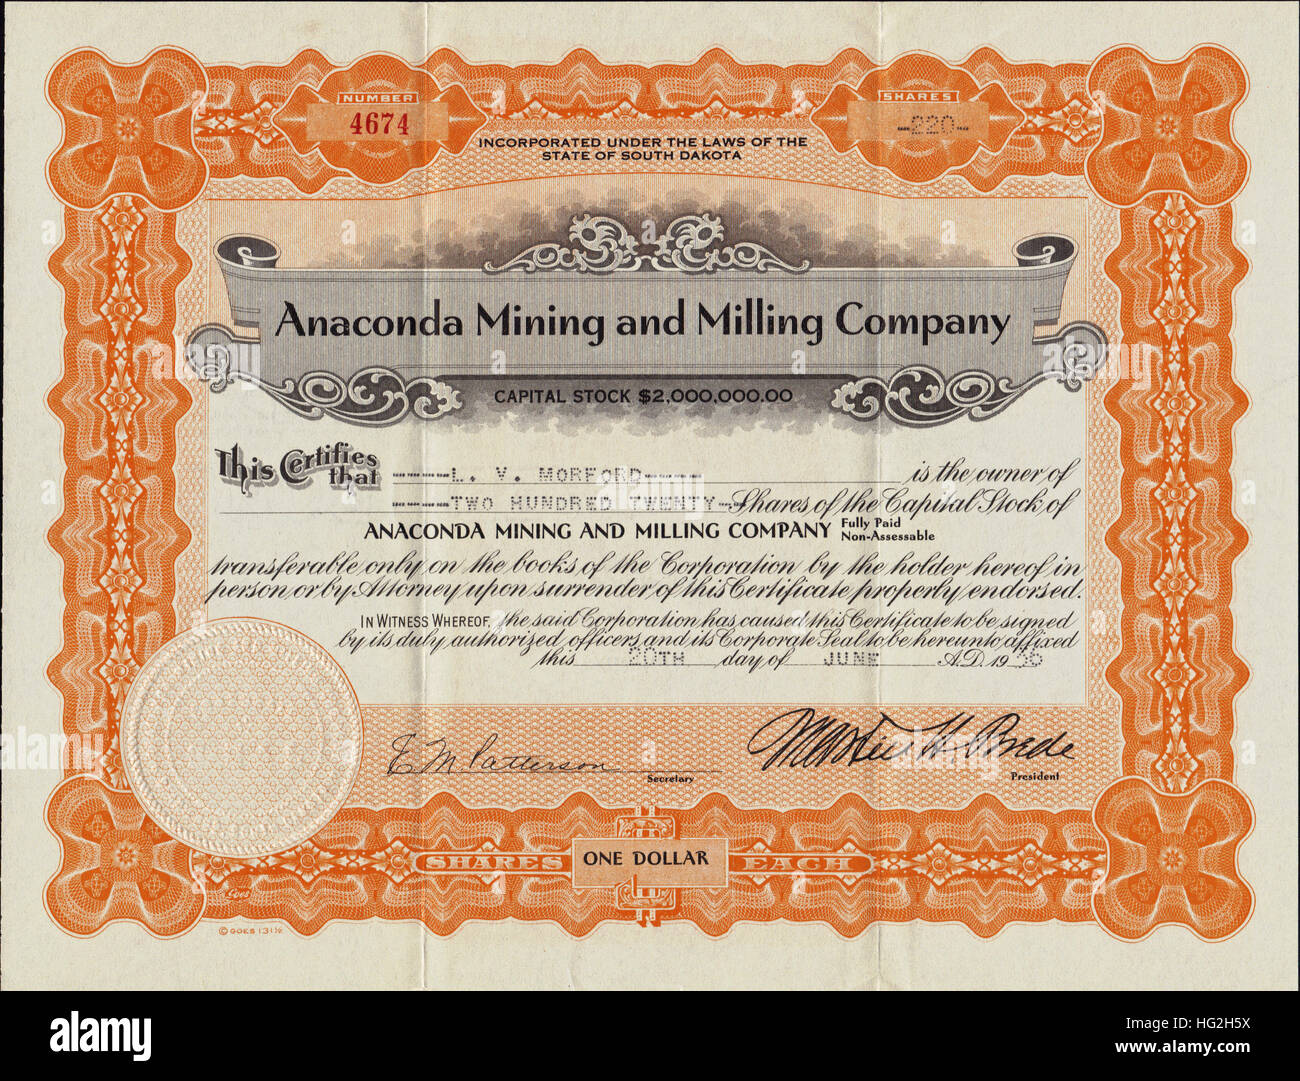 1936 L'exploitation minière et d'Anaconda Milling Company Stock Certificate - Deadwood, Dakota du Sud - USA Banque D'Images